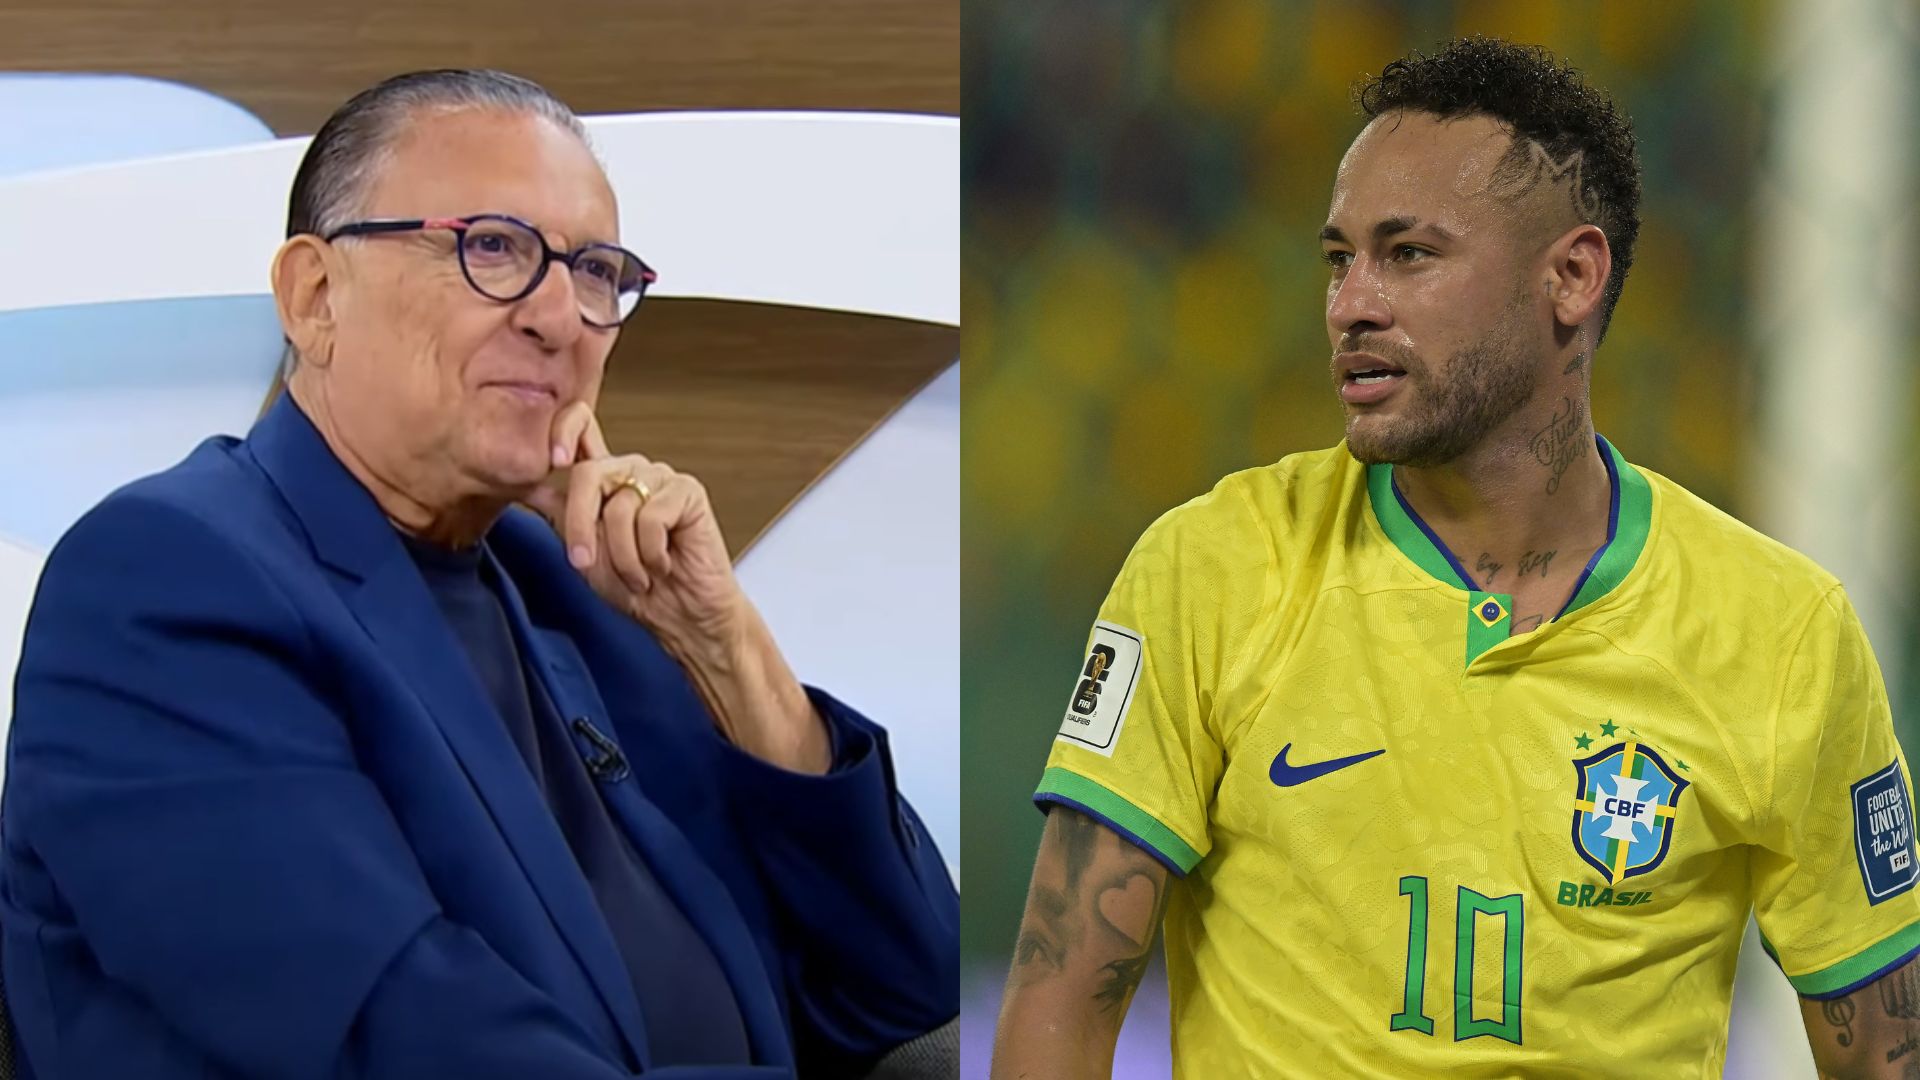 Galvão Bueno fala de relação com Neymar e revela se houve rusga: “Talvez ele não se sinta bem perto de mim”; assista